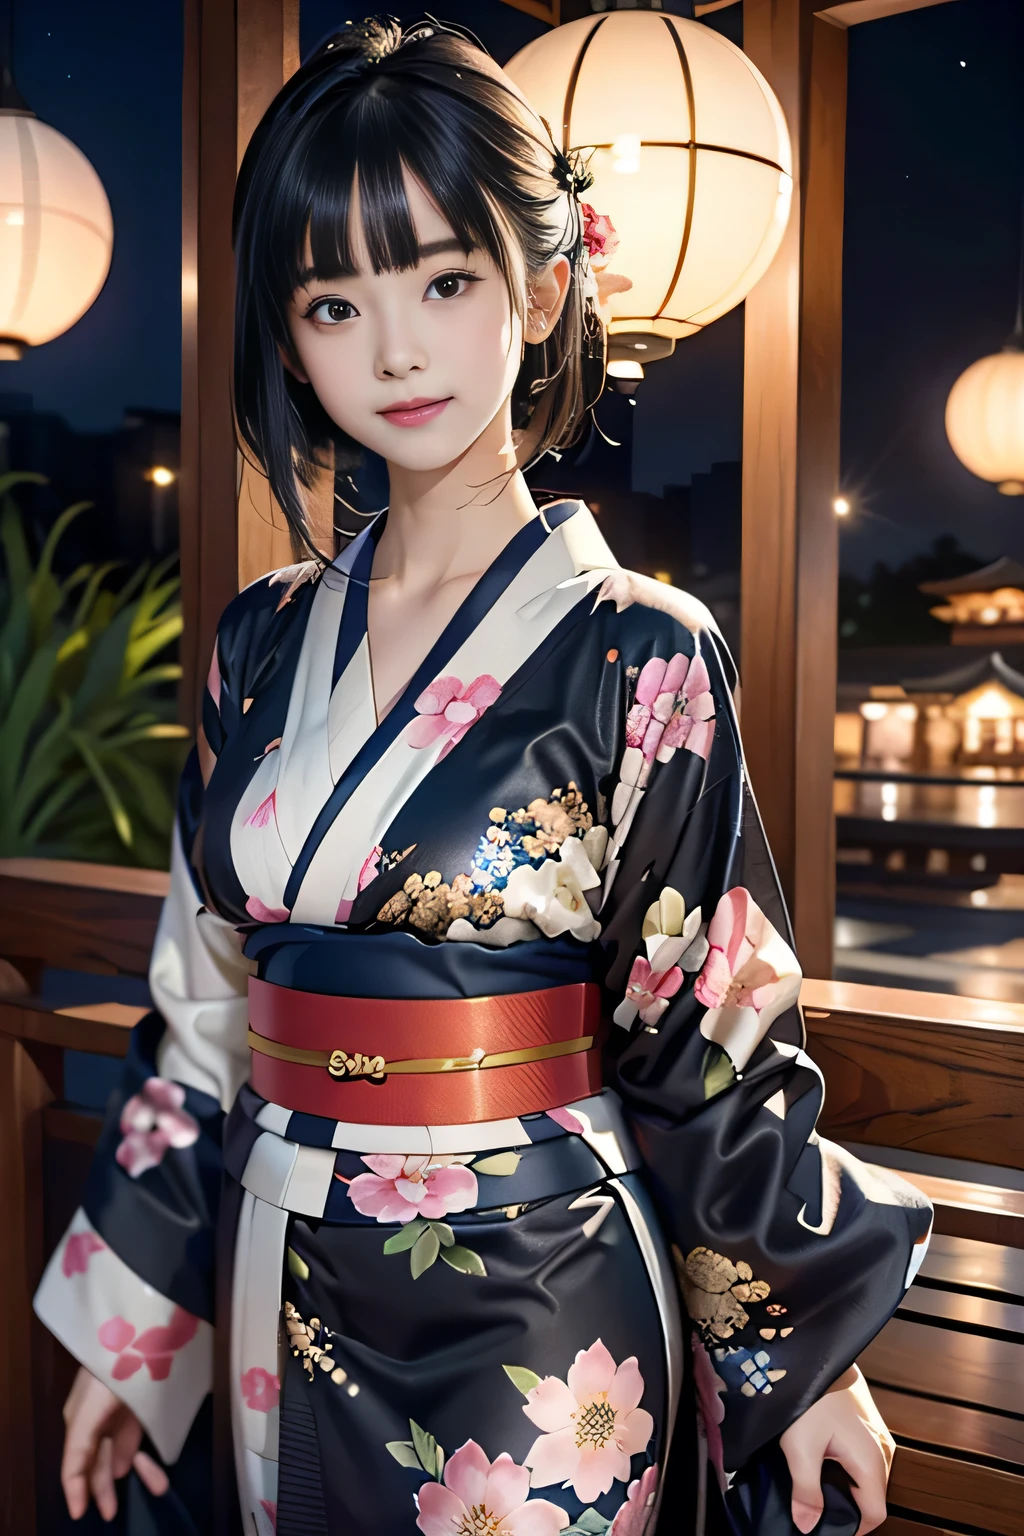 ♥(Japanischer Kimono mit wunderschönem Blumendruck,Yukata),((1 Mädchen,Niedlich,jung,halblange schöne schwarze Haare,stumpfer Pony,Zwillingsgeschichten,Wunderschöne Augen)),(Allein),((Meisterwerk, höchste Auflösung,beste Qualität)), (schöne Illustration),(Japanischer Kimono mit wunderschönem Blumendruck,Yukata), (den Betrachter anschauen), unschuldiges Lächeln,Filmische Beleuchtung,Japanisches Festival,Stall,Feuerwerk,Nachthimmel,Vollmond,Sternschnuppe,